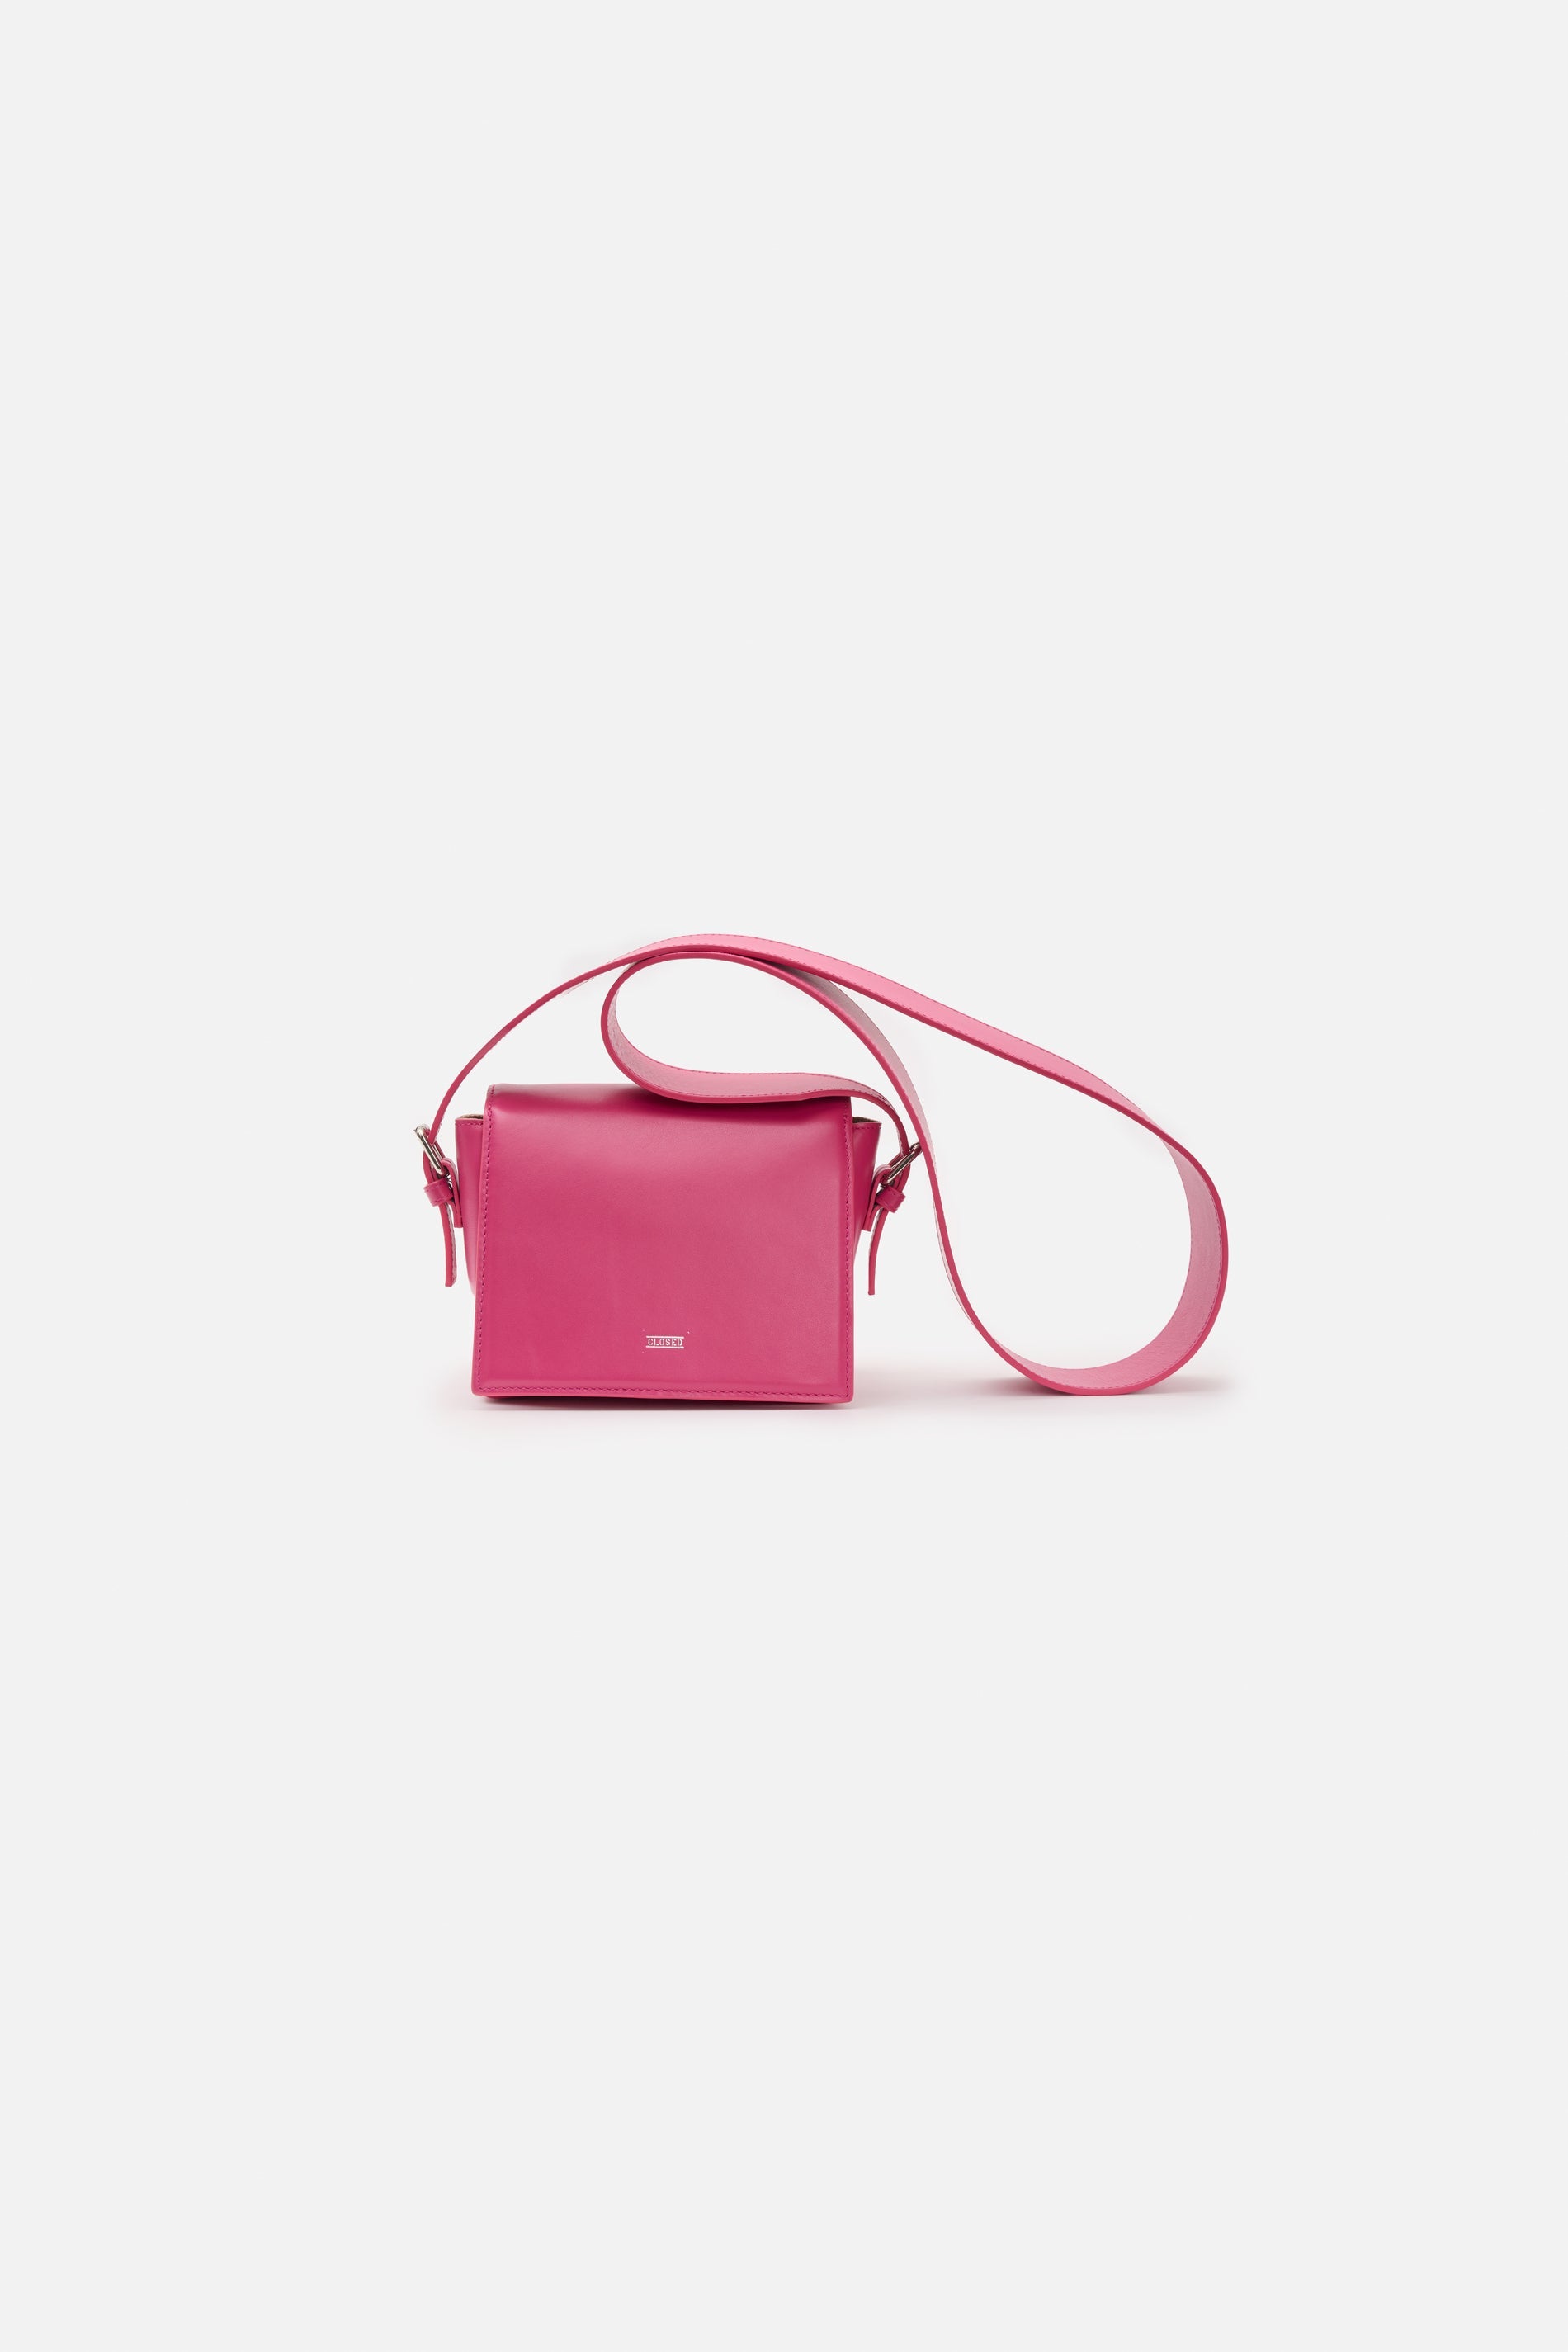 CLOSED-SHOULDER BAG S-Accessoires-Outlet-Sale